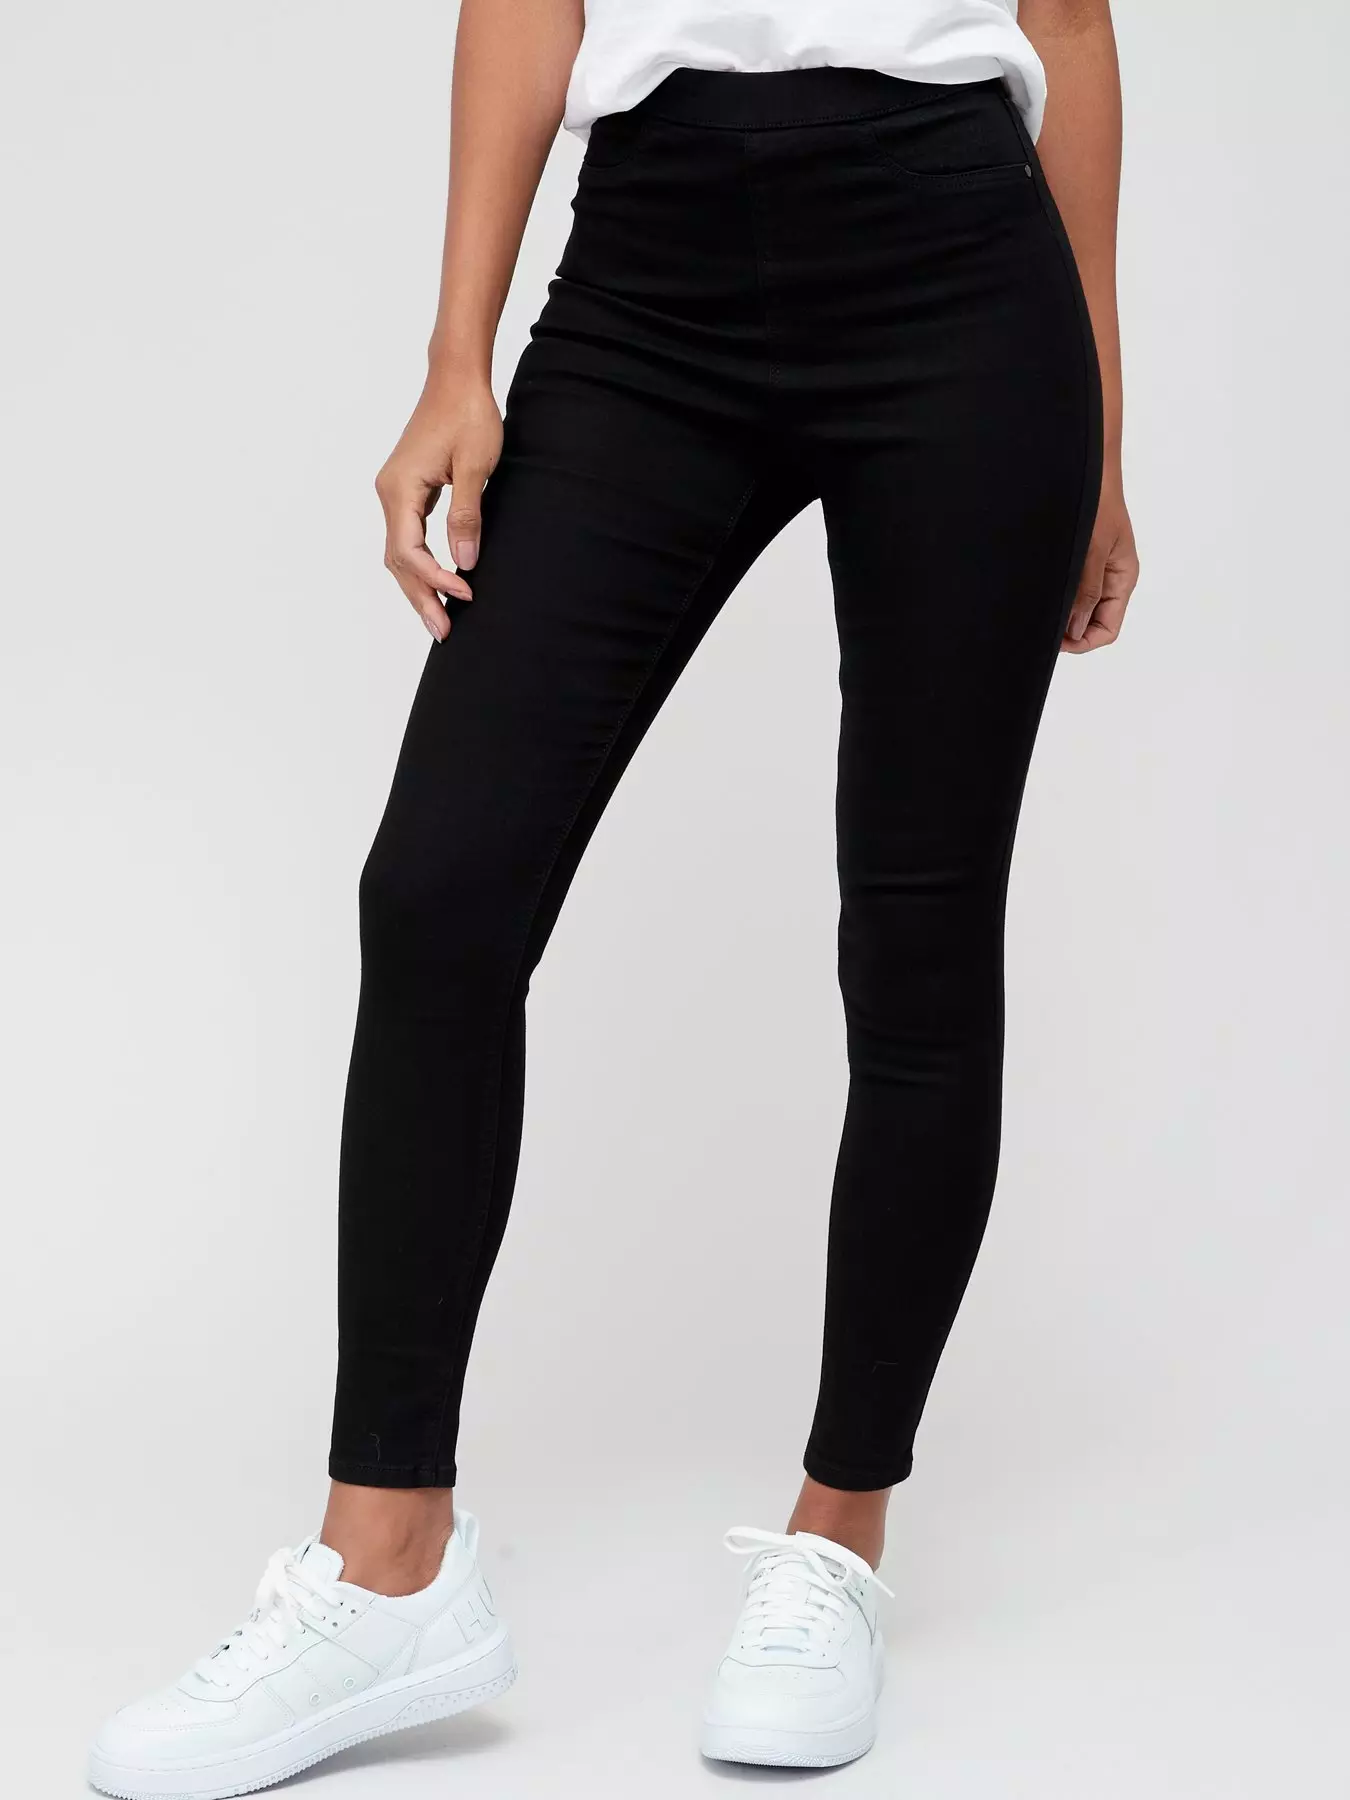 VSVO Women's Jeggings (Small/Medium, 02 Black) at  Women's Jeans store